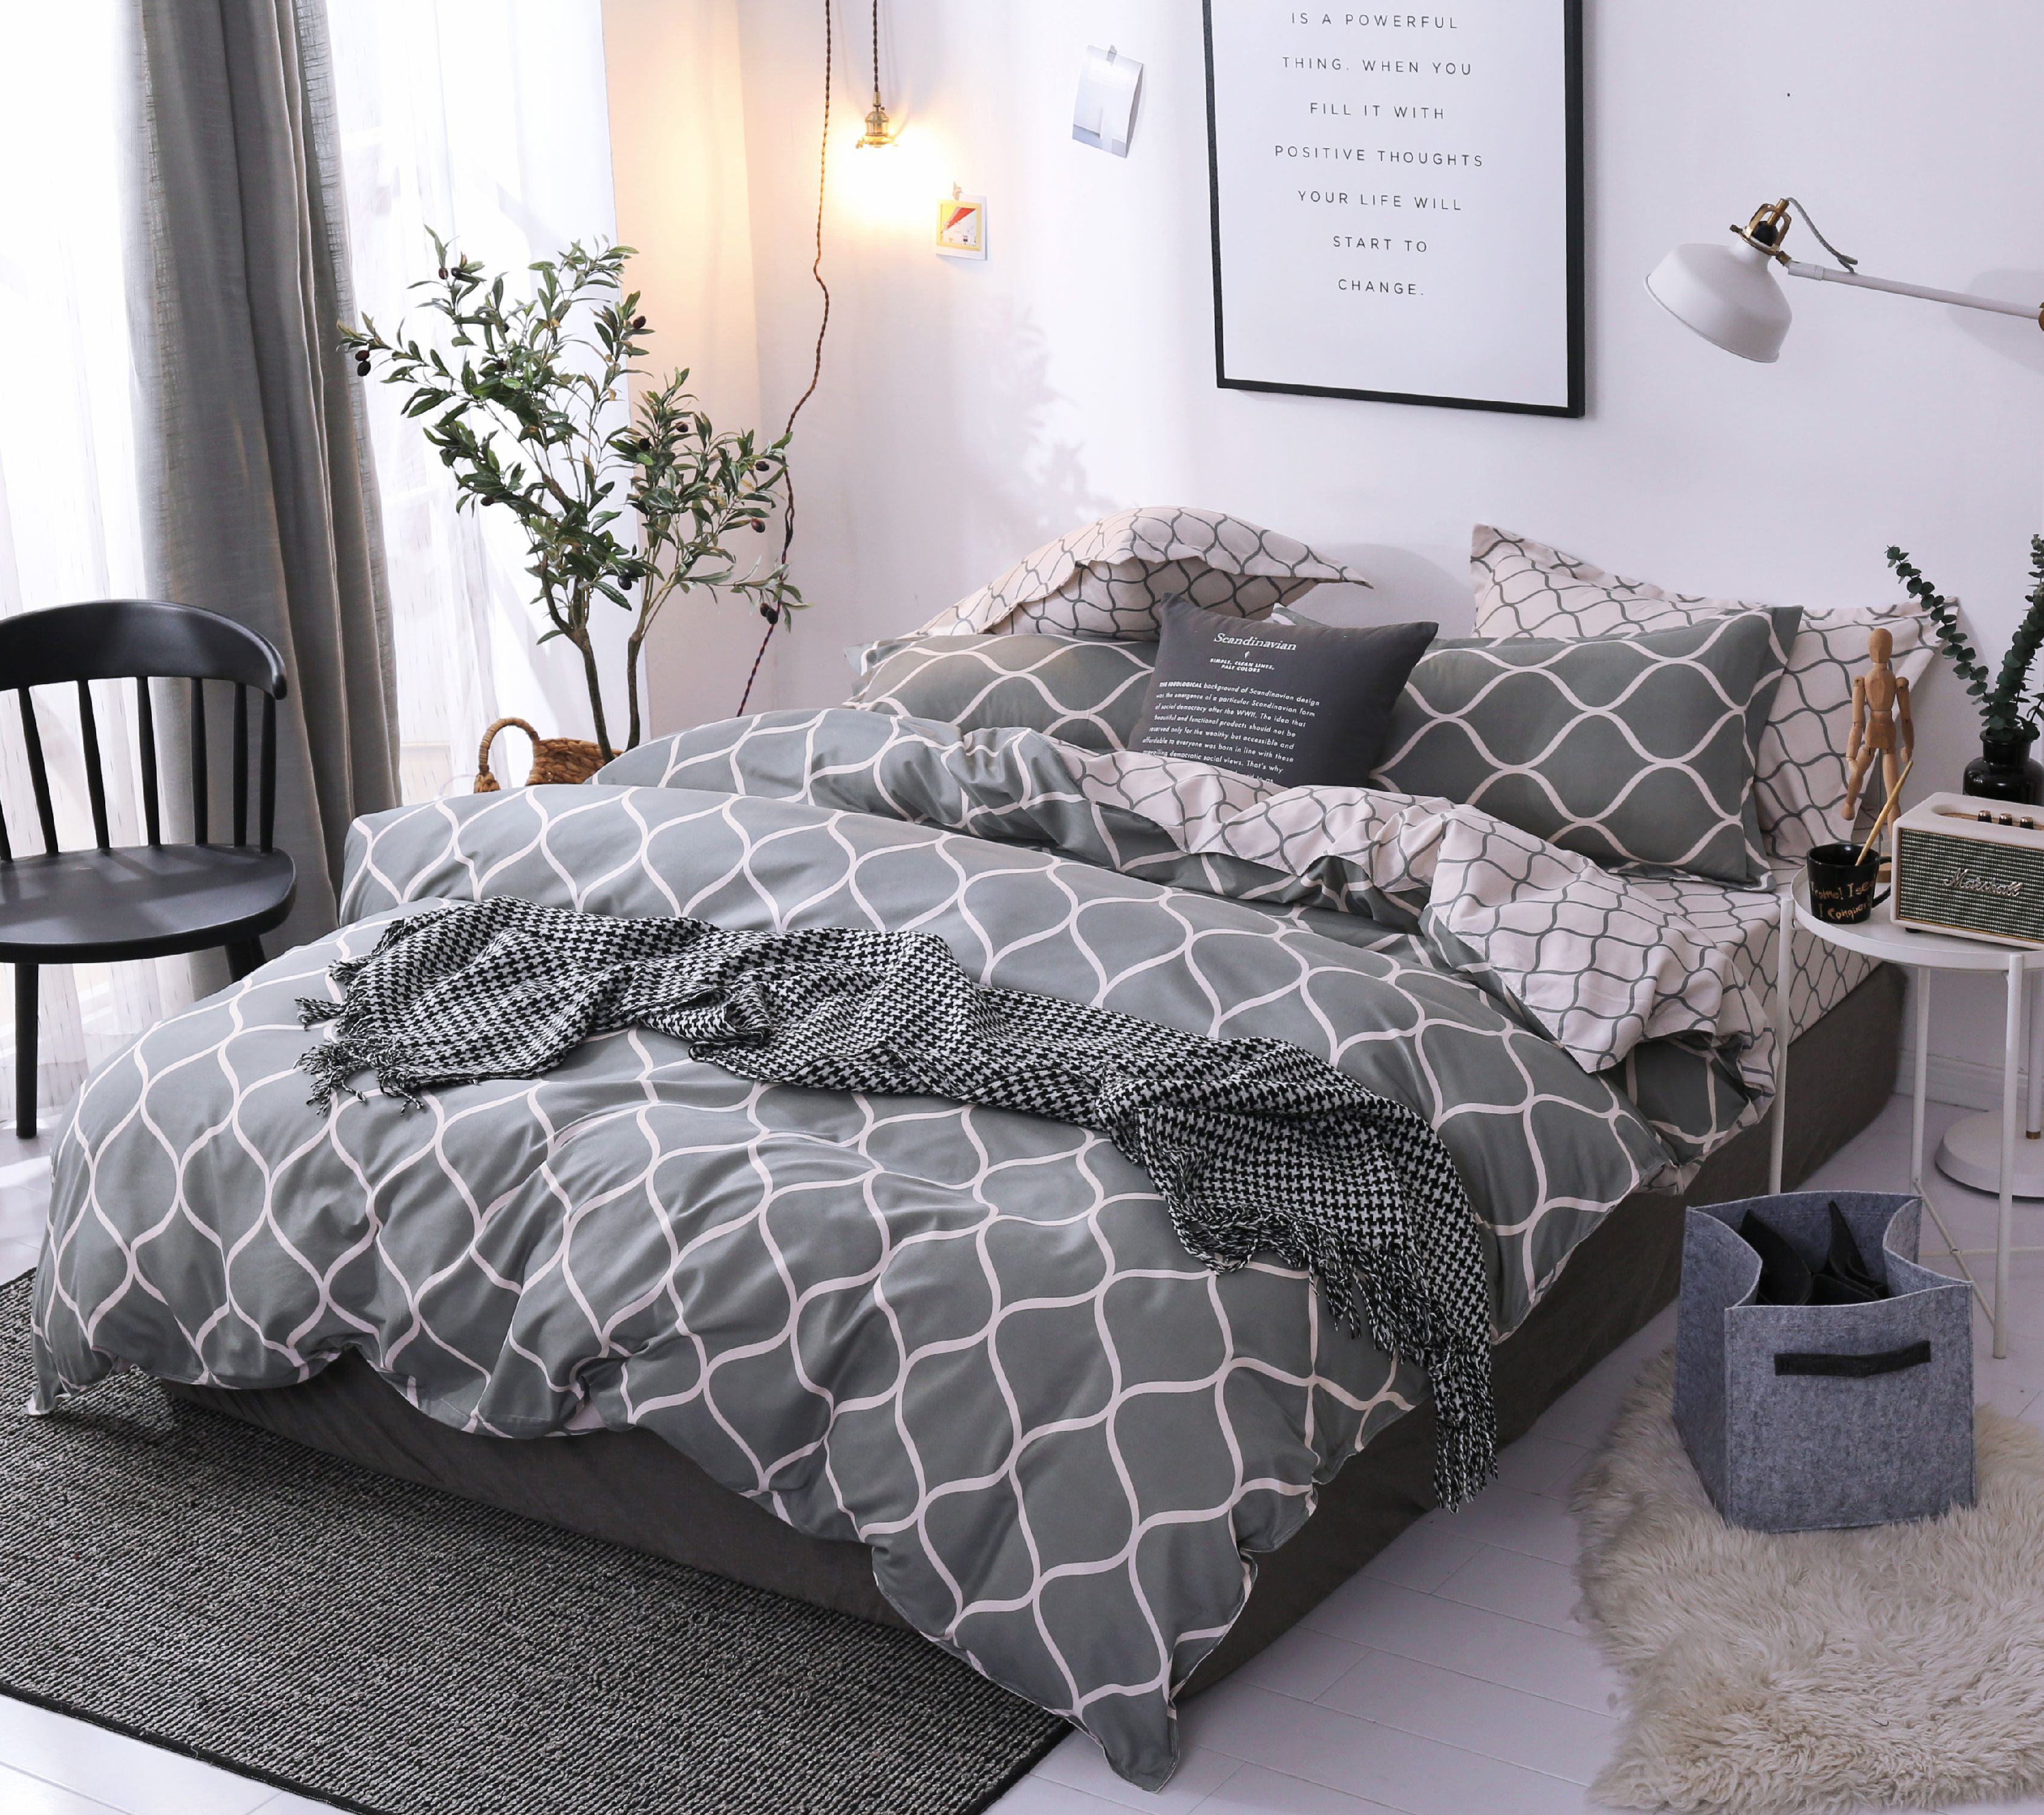 HGmart Queen Bedding Comforter Set Bed In A Bag 5Pcs Microfiber Bedding Sets Leo 